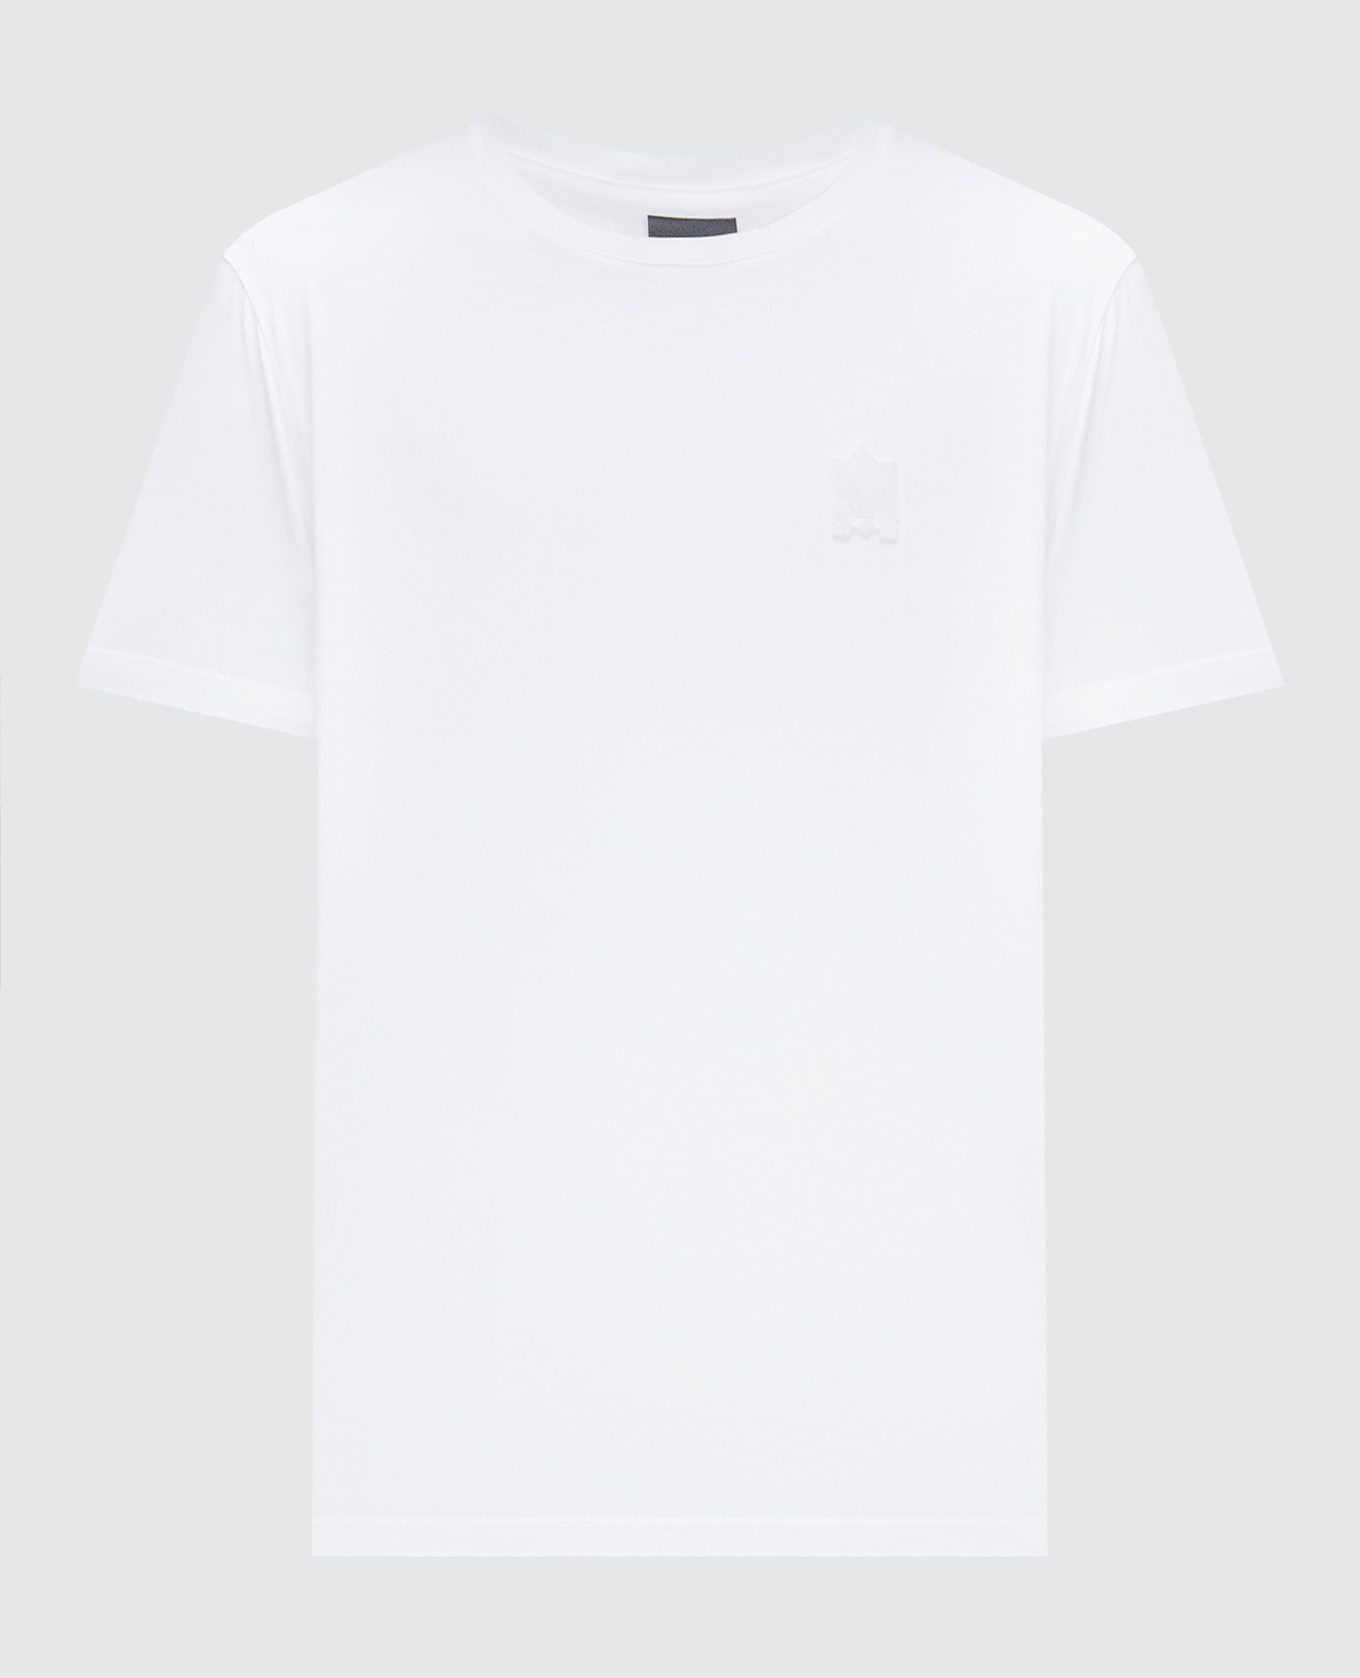 Белая футболка с фактурной эмблемой логотипа